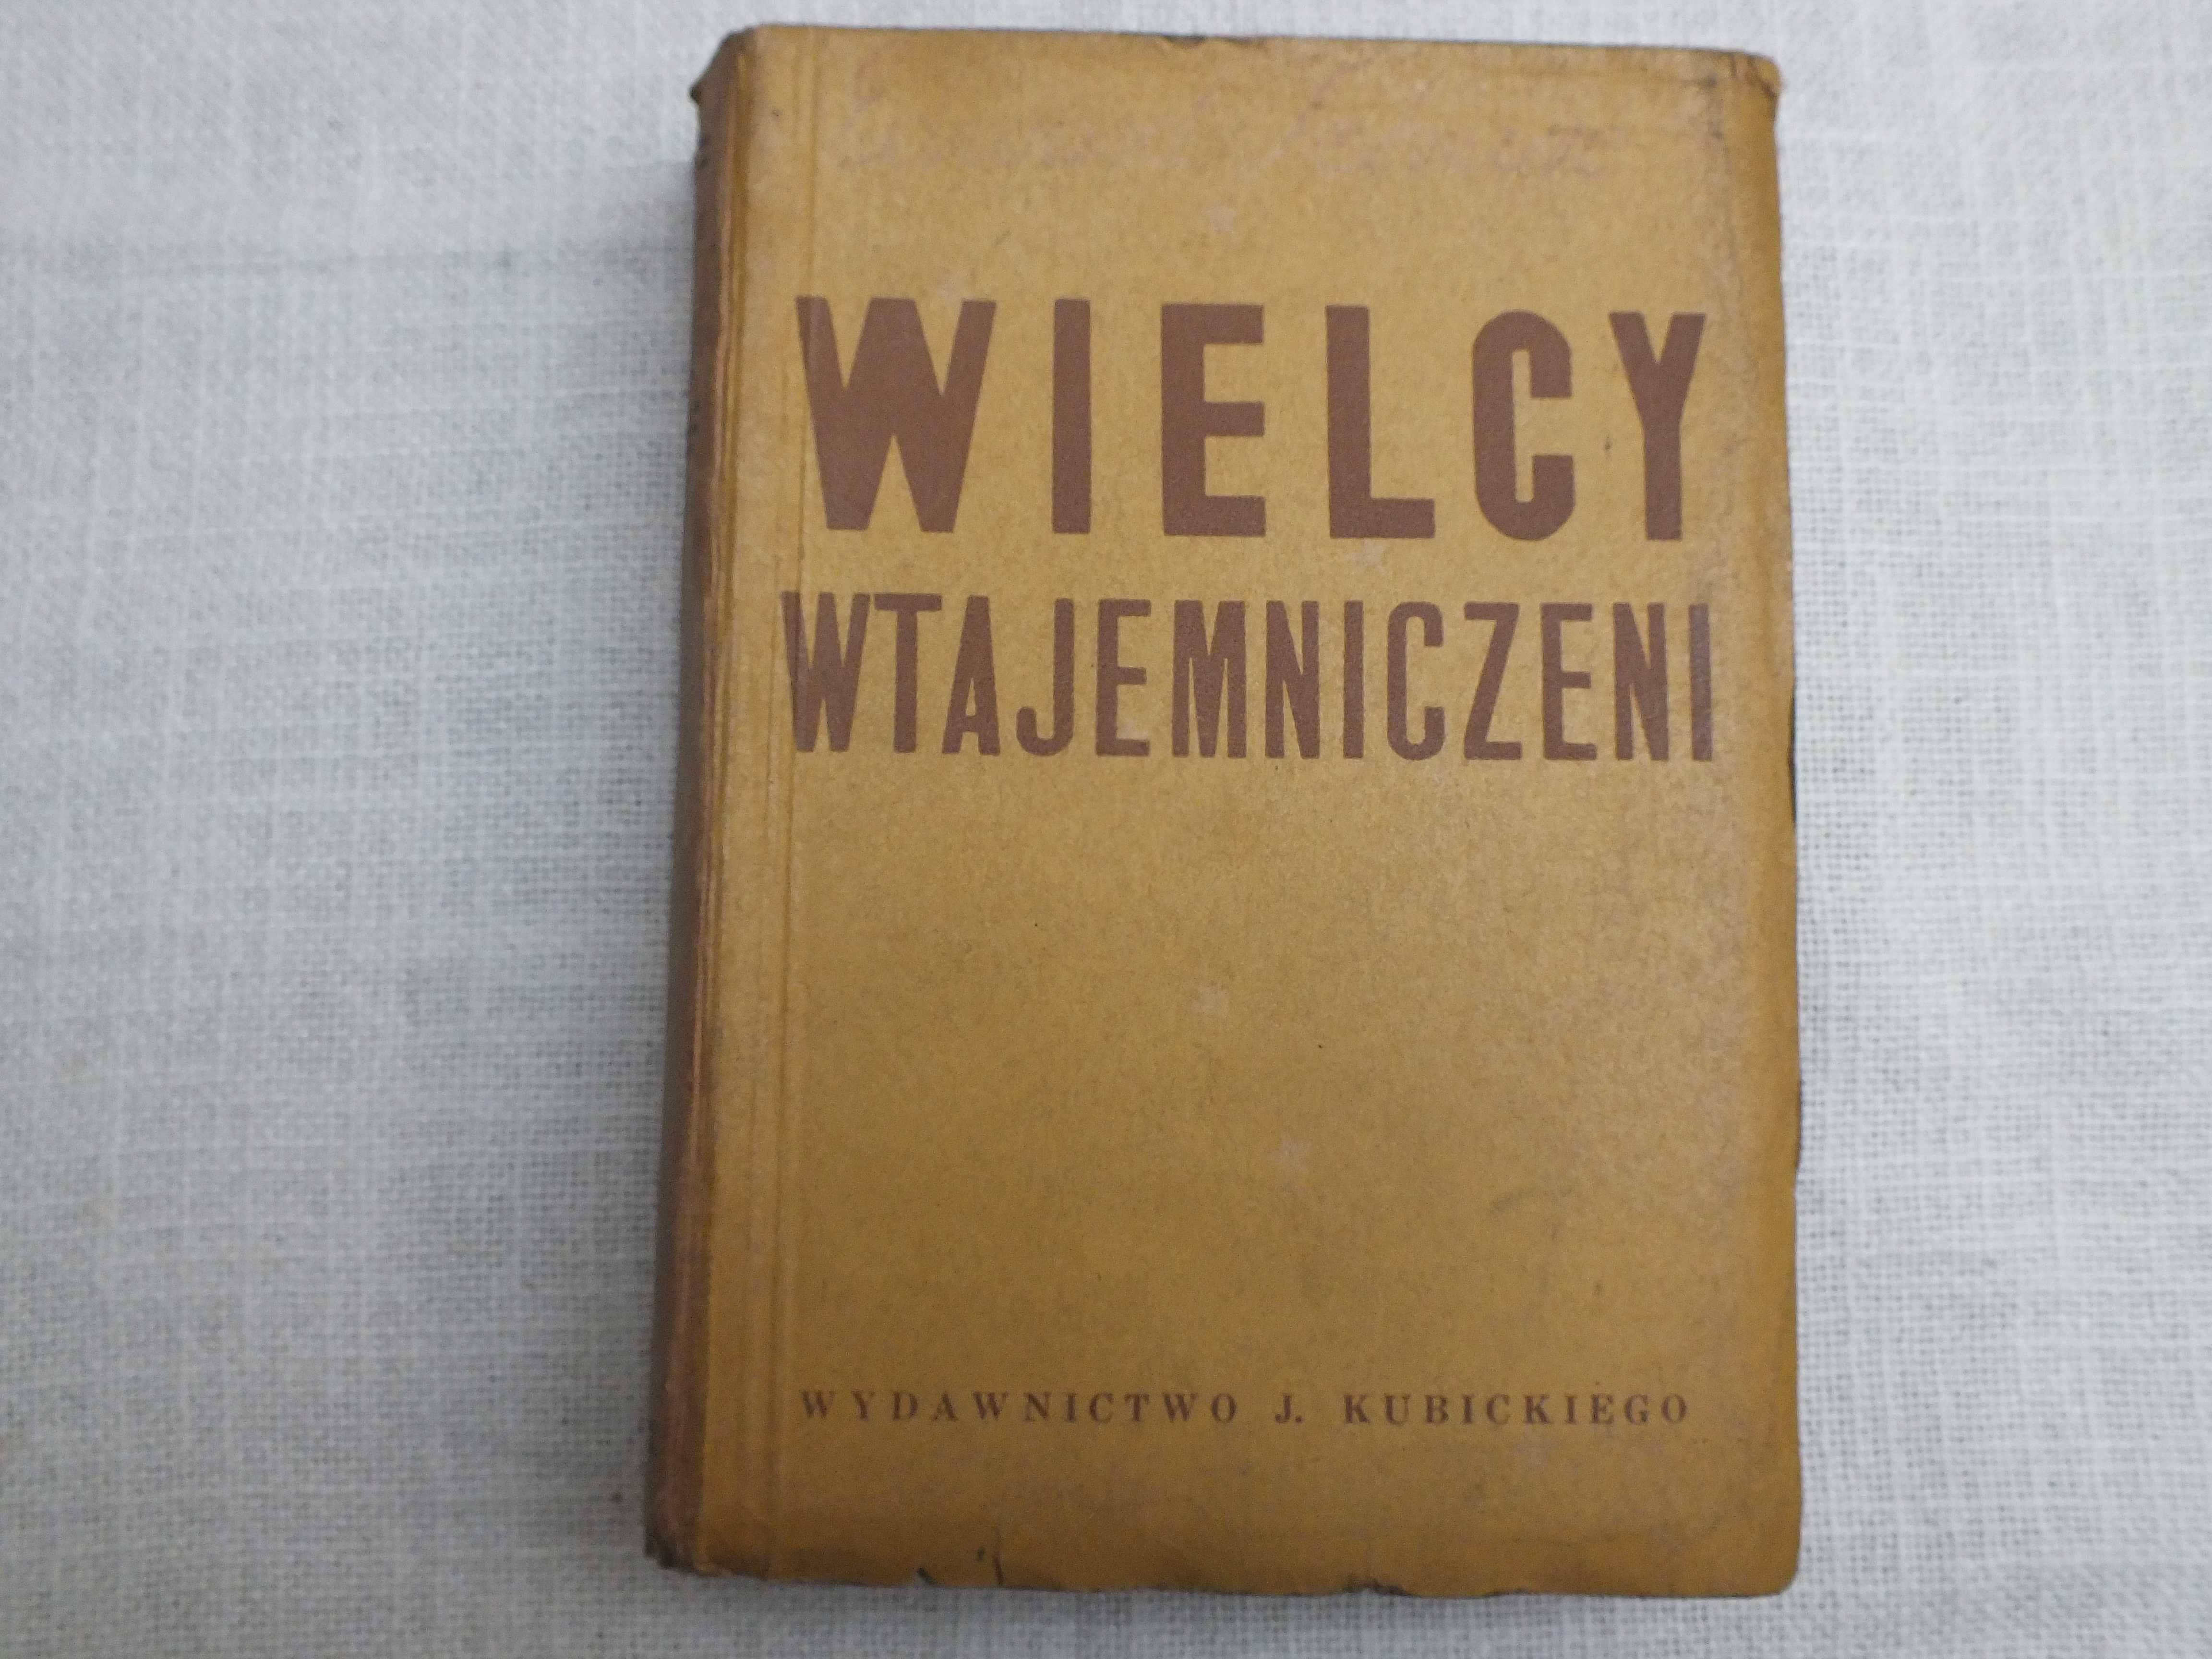 E.SCHURÉ Wielcy wtajemniczeni. Wyd.Kubickiego 1939 Wyd.1 zupełne